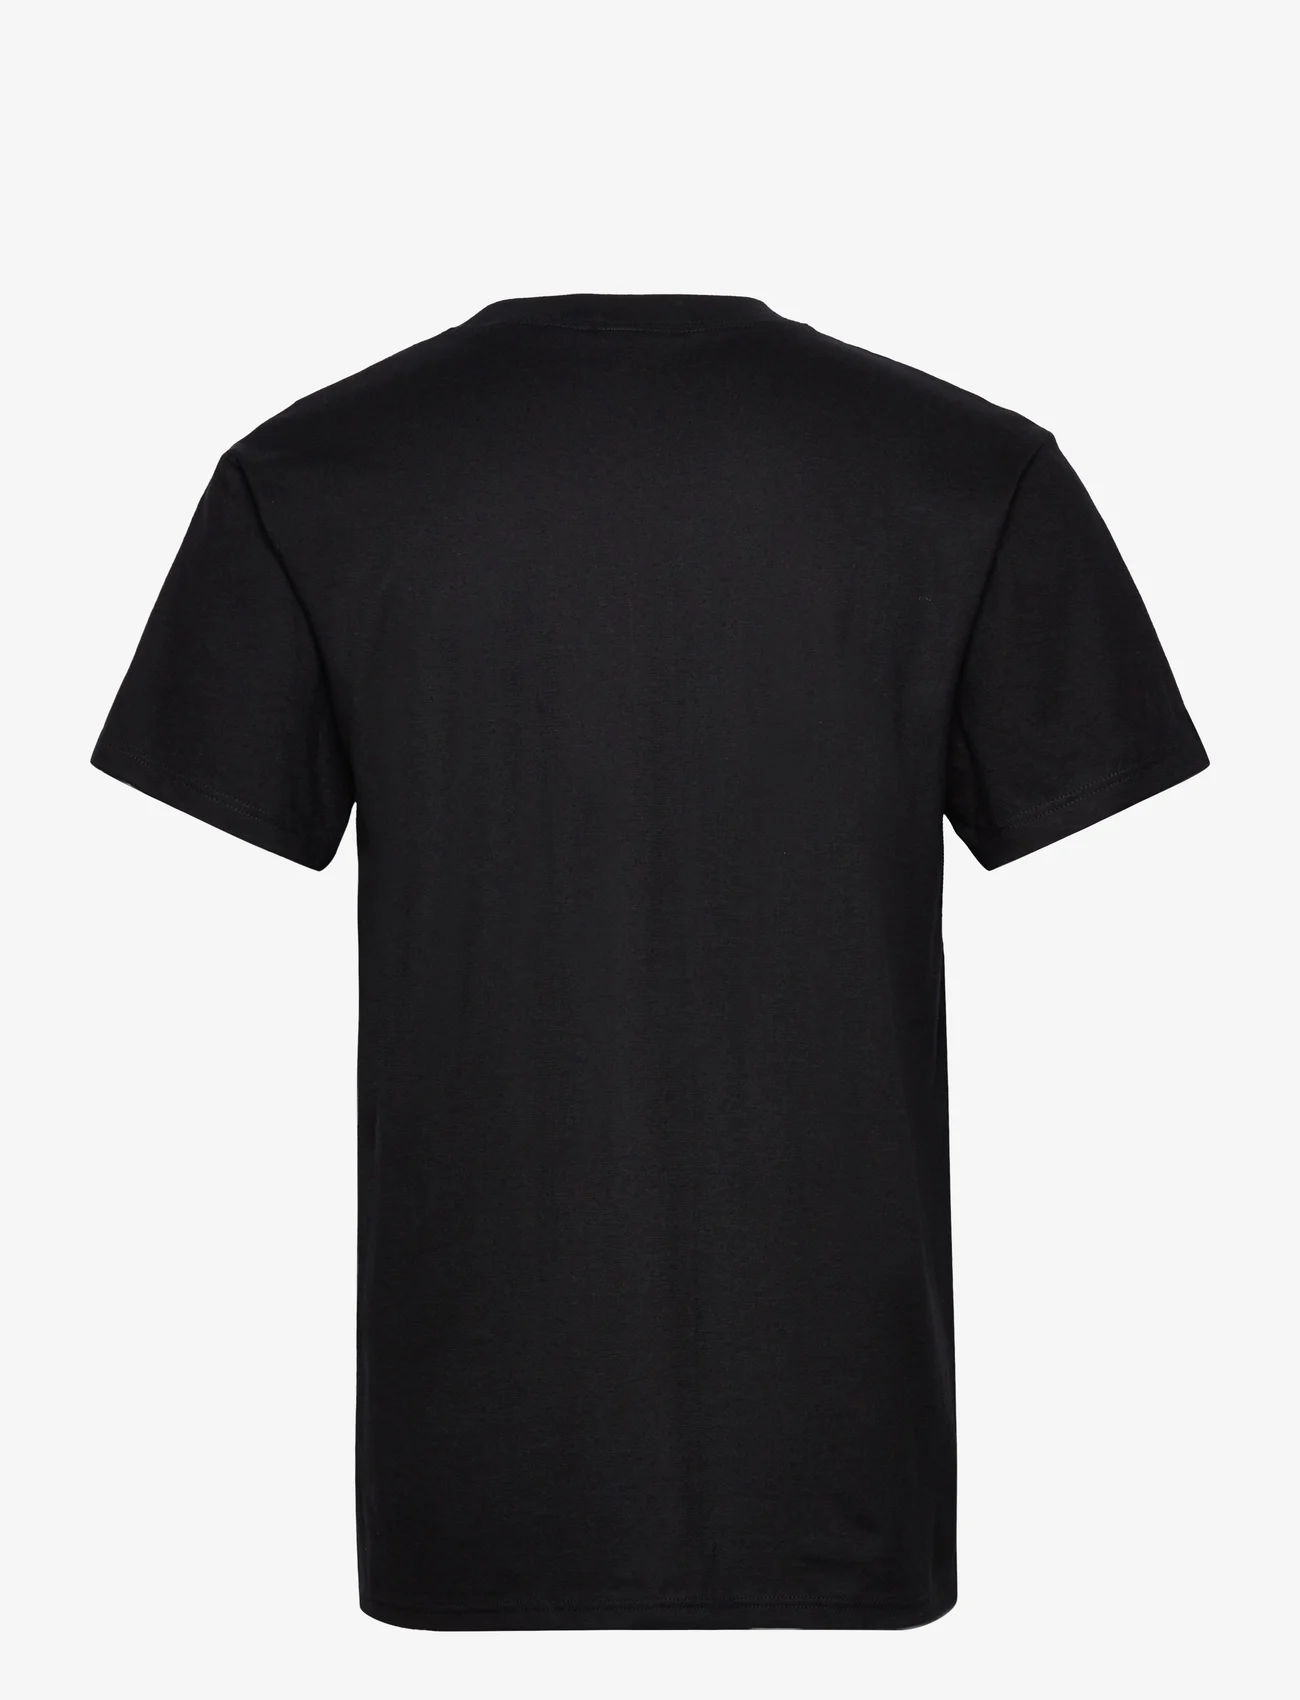 Dovre - Dovre T-shirts 1/4 ærme organi - mažiausios kainos - black - 1